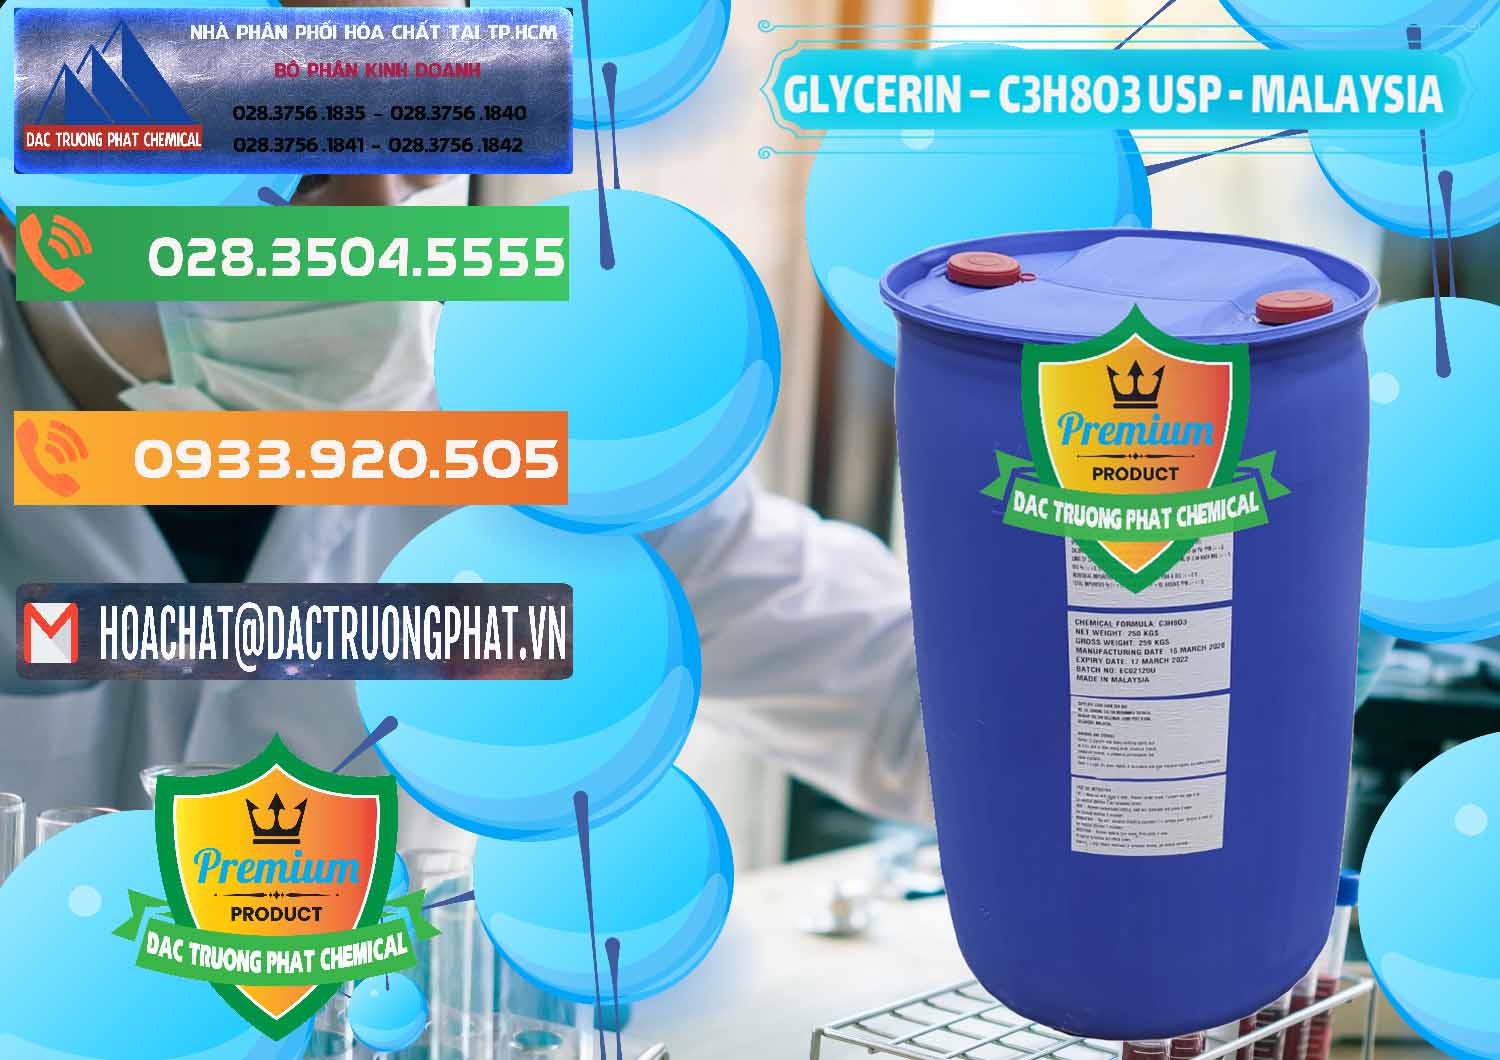 Nhà cung cấp & bán Glycerin – C3H8O3 USP Malaysia - 0233 - Công ty kinh doanh ( cung cấp ) hóa chất tại TP.HCM - hoachatxulynuoc.com.vn